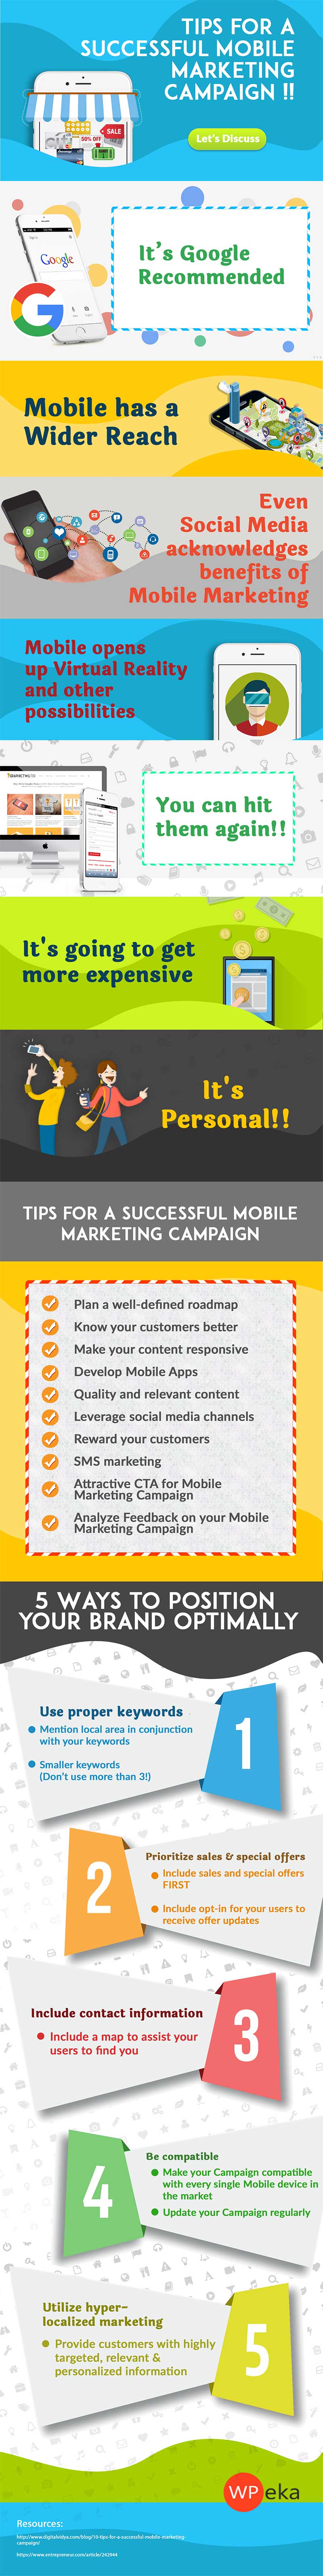 successful mobile marketing campaigns